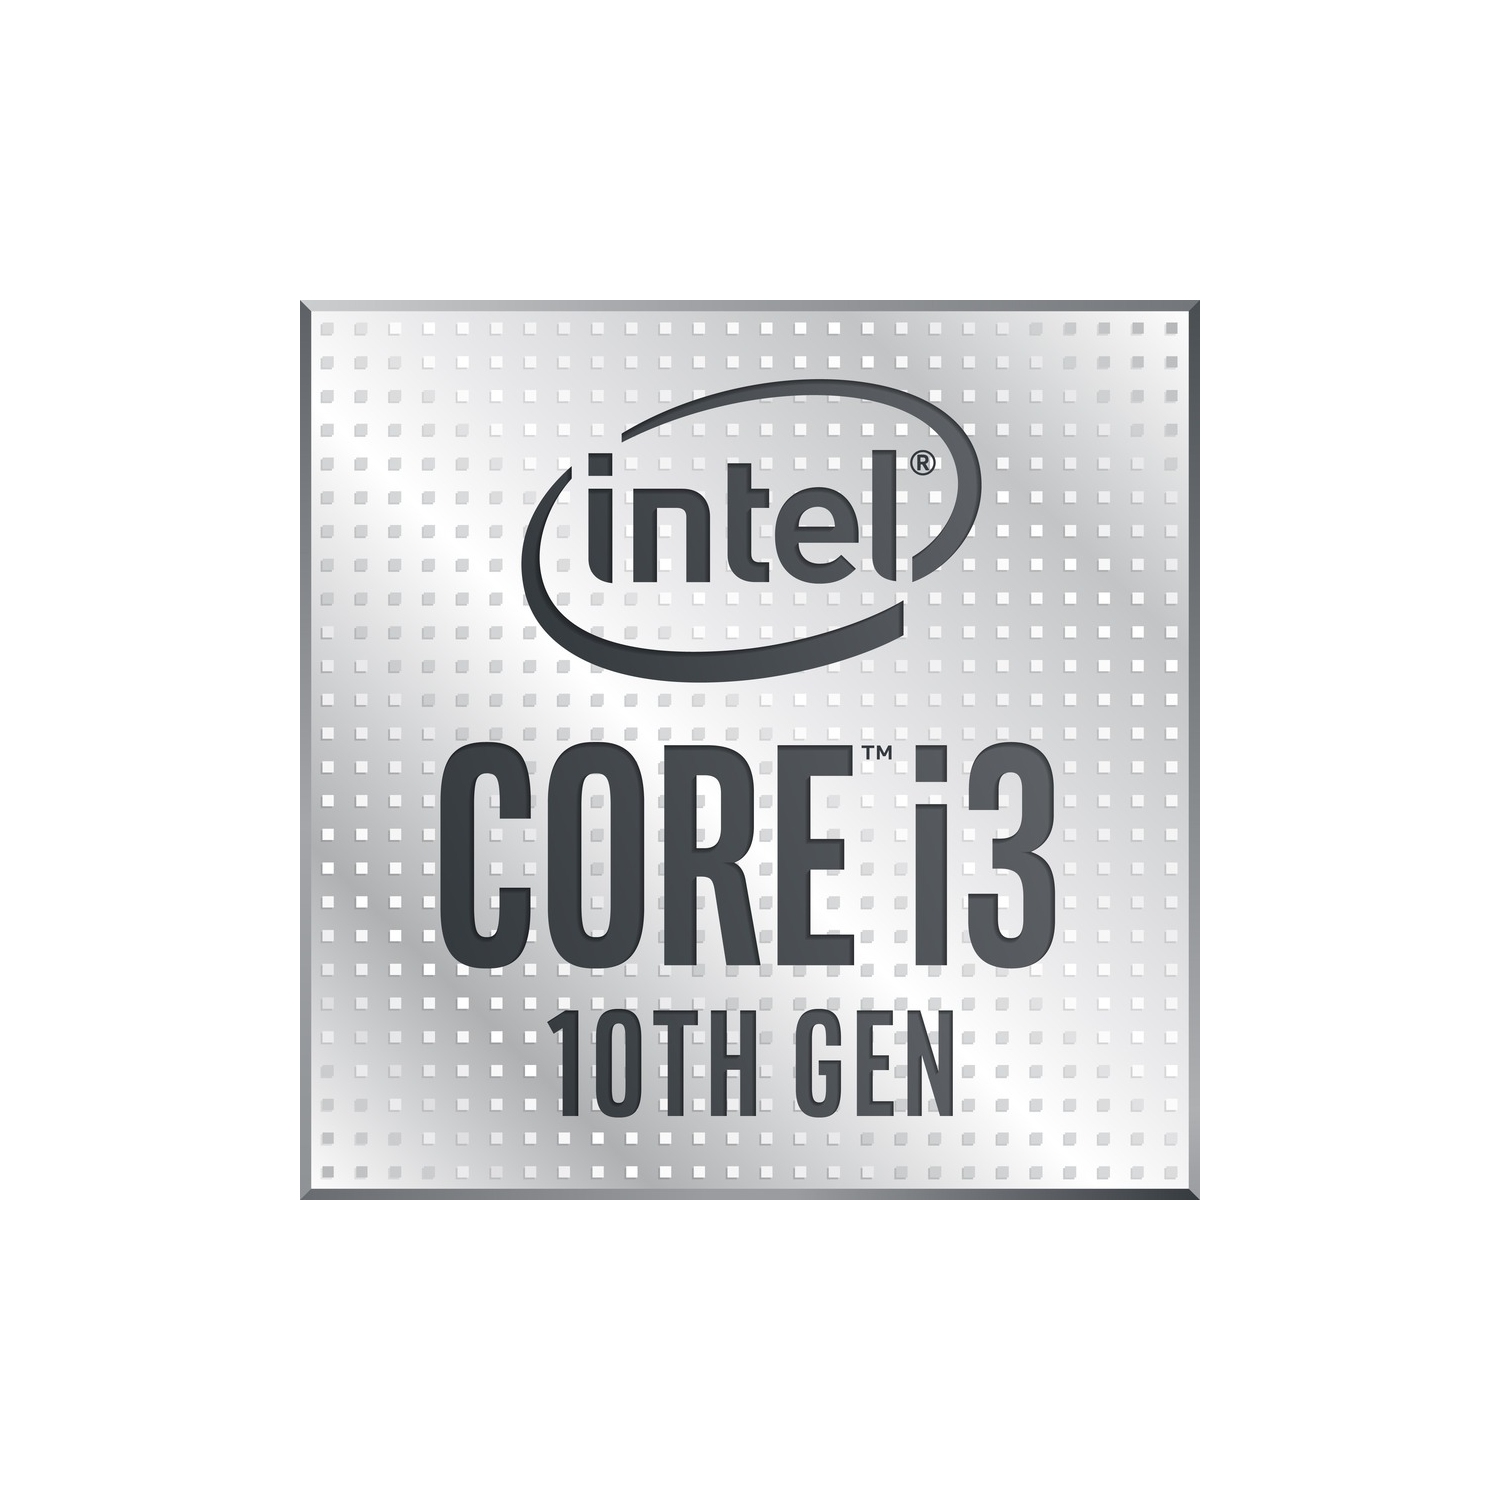 Intel Core i3 Quad-core i3-10100 3.60 GHz Desktop Processor